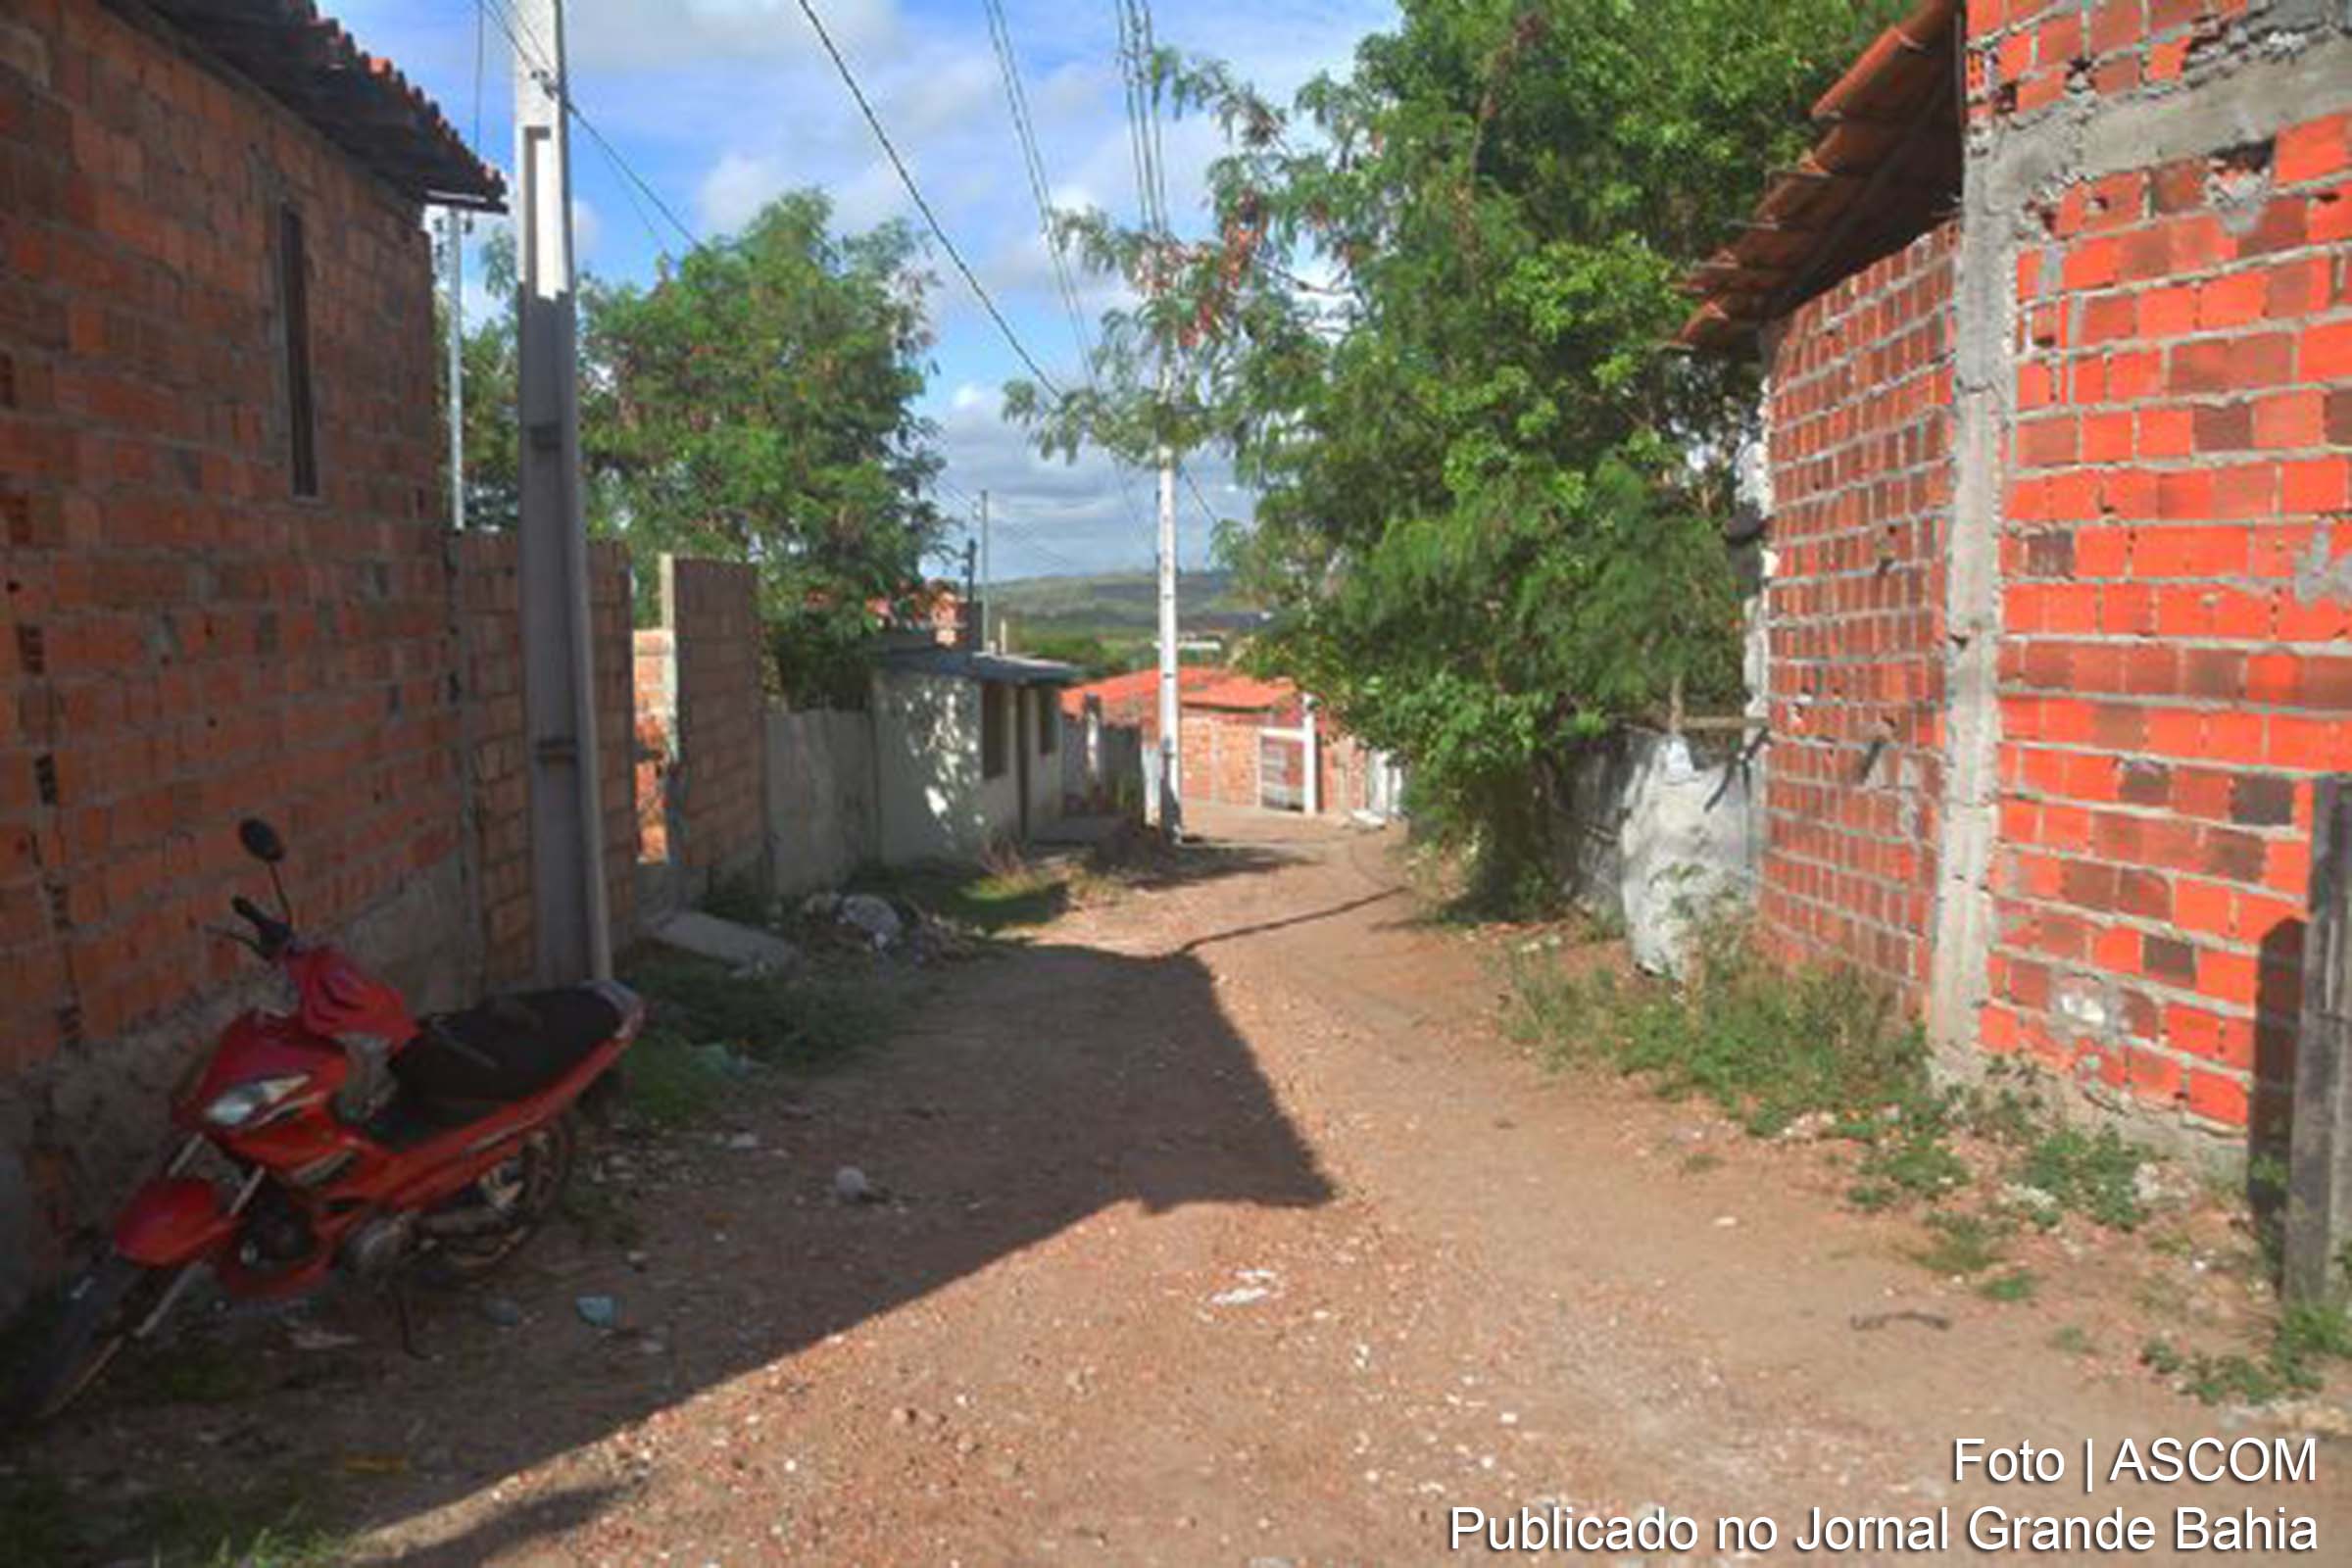 Secretaria de Desenvolvimento Urbano de Feira de Santana autoriza obras de pavimentação de ruas localizadas no Bairro Viveiros.